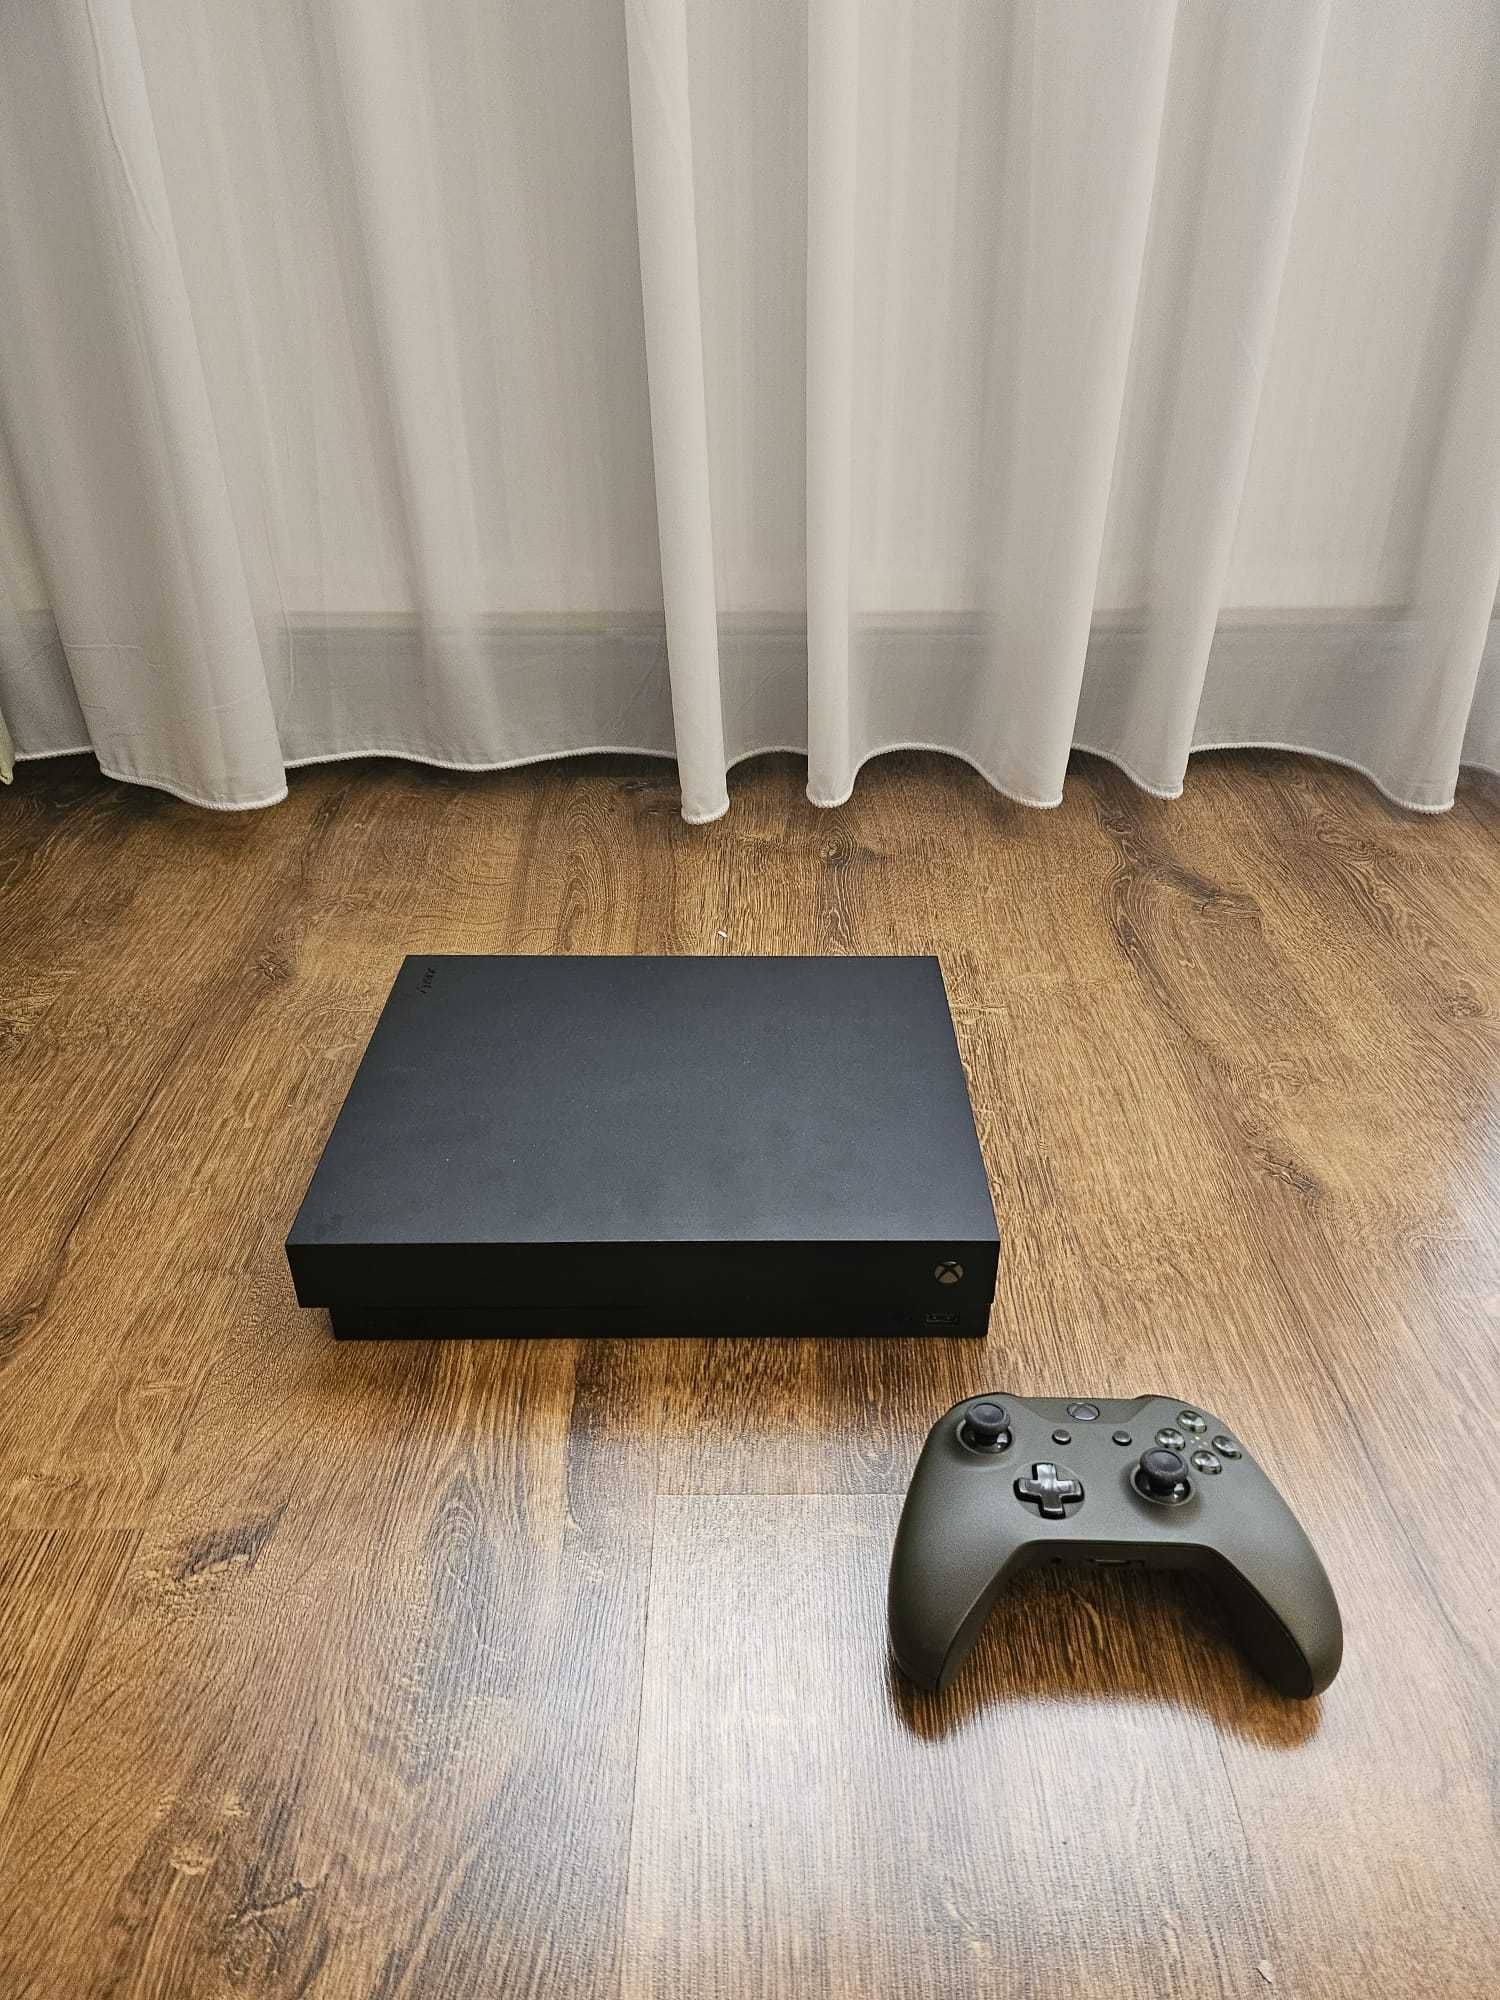 Consola Xbox ONE X 1 TB